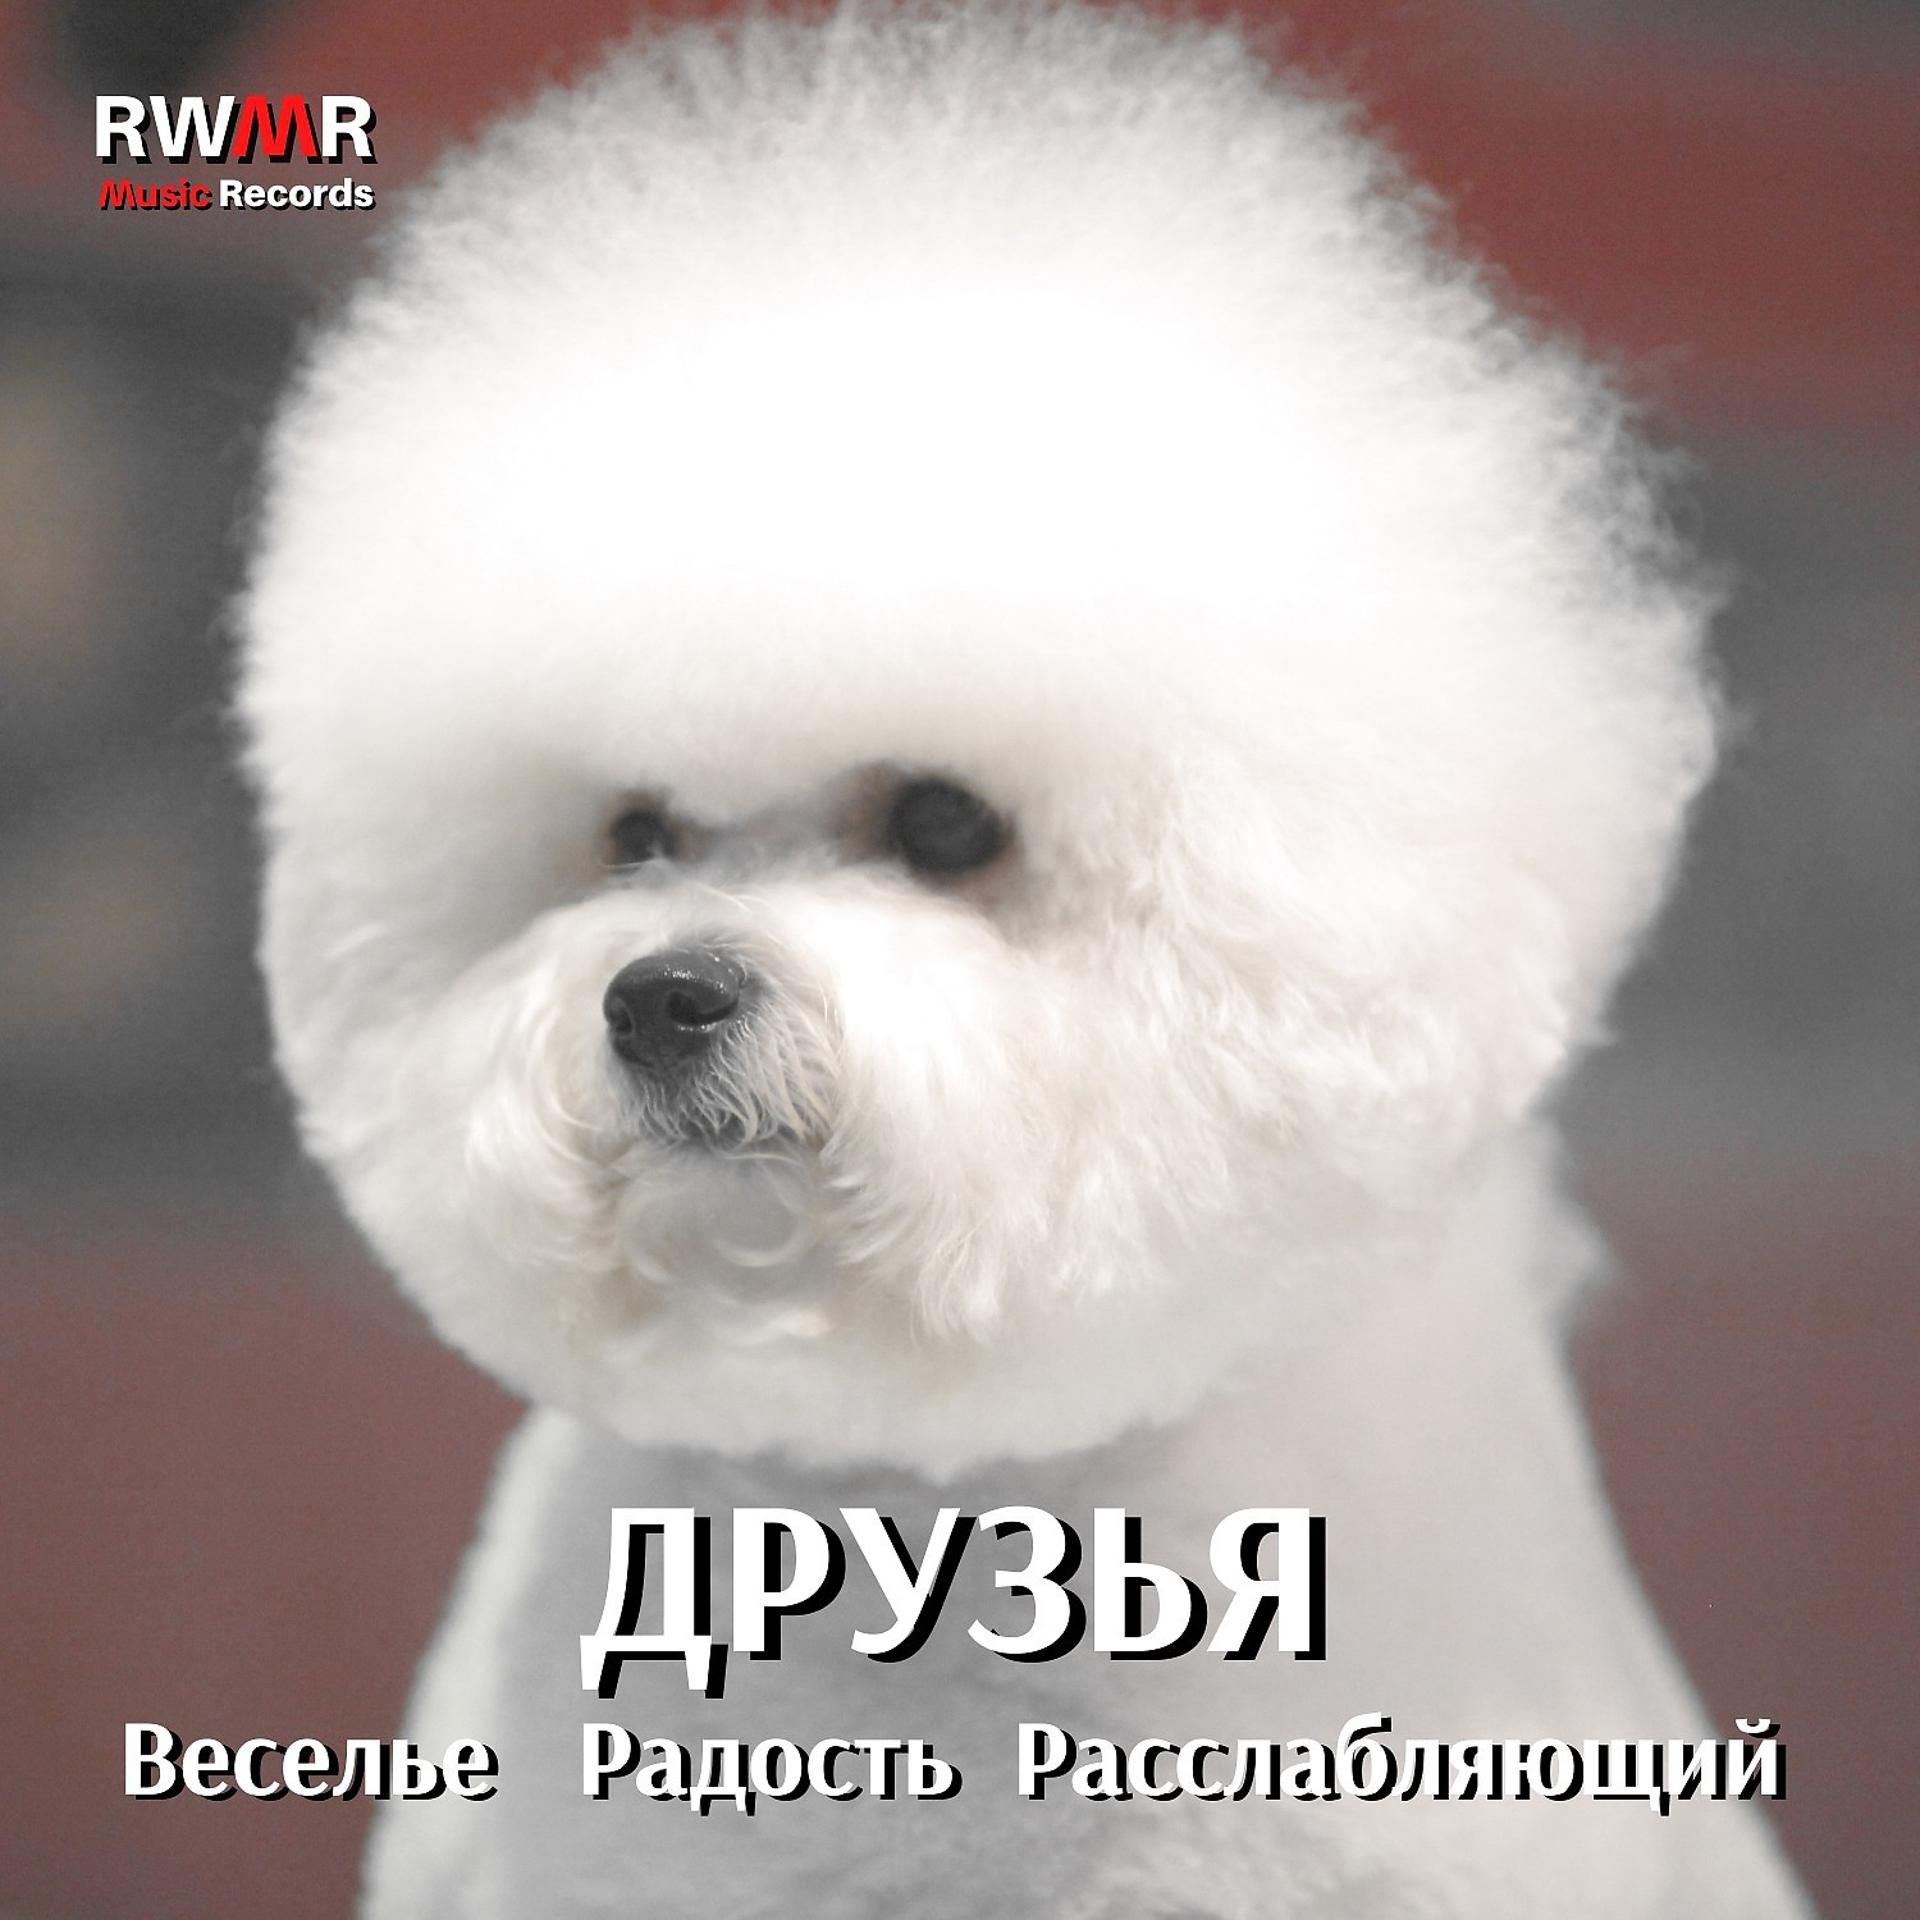 Постер альбома Друзья - Радость, веселье, релаксация, инструментальная музыка для собак, счастливый щенок, фон белый шум, песни для животных